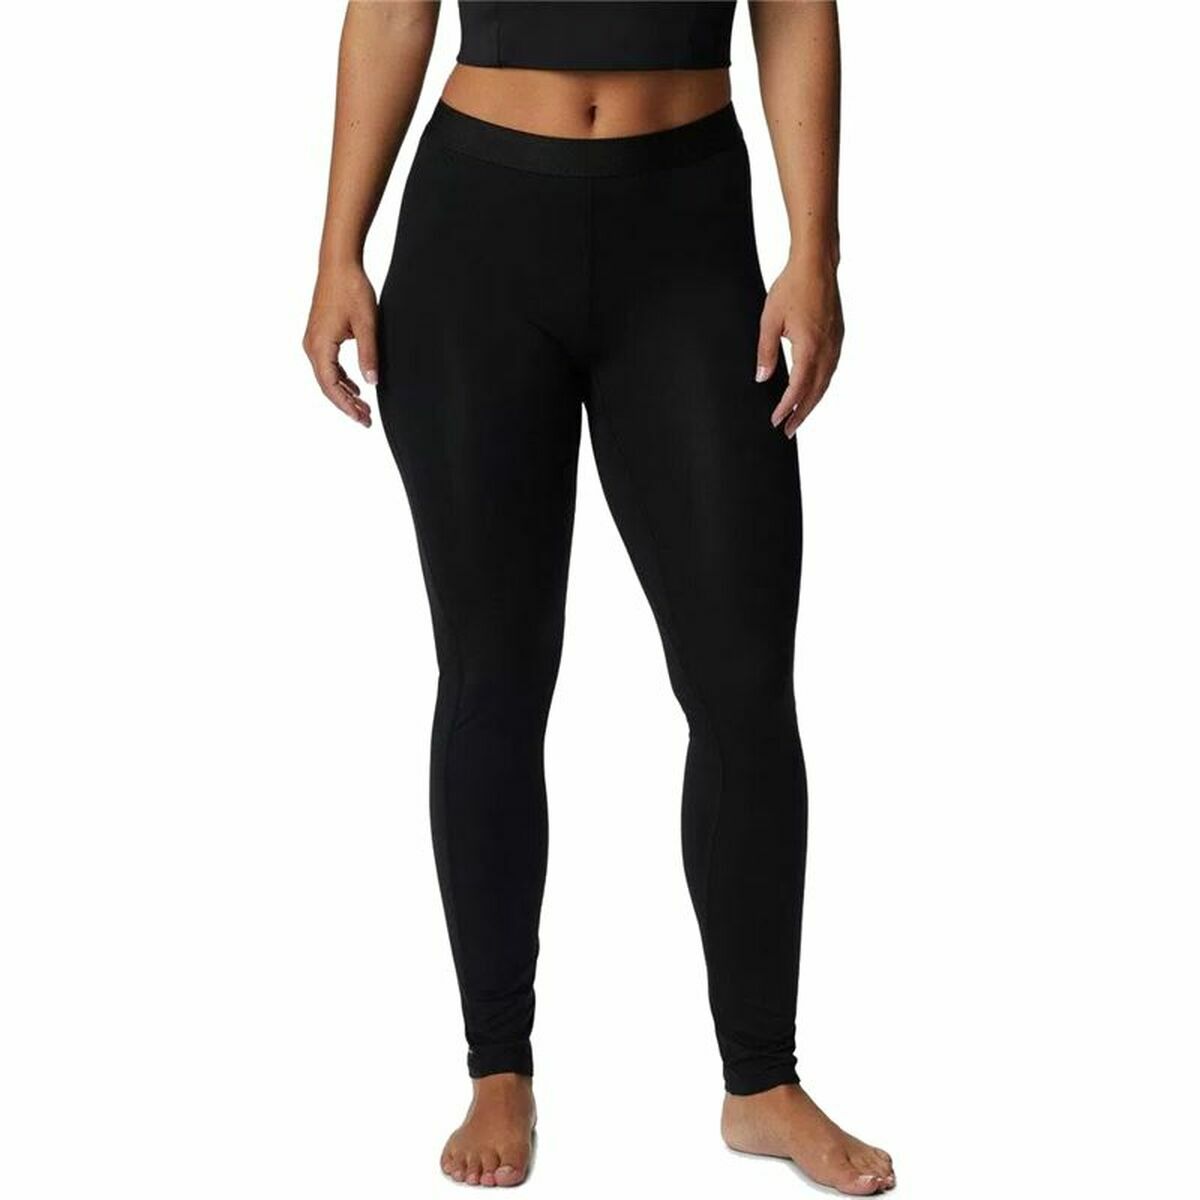 Sport leggings for Women Columbia Black XS